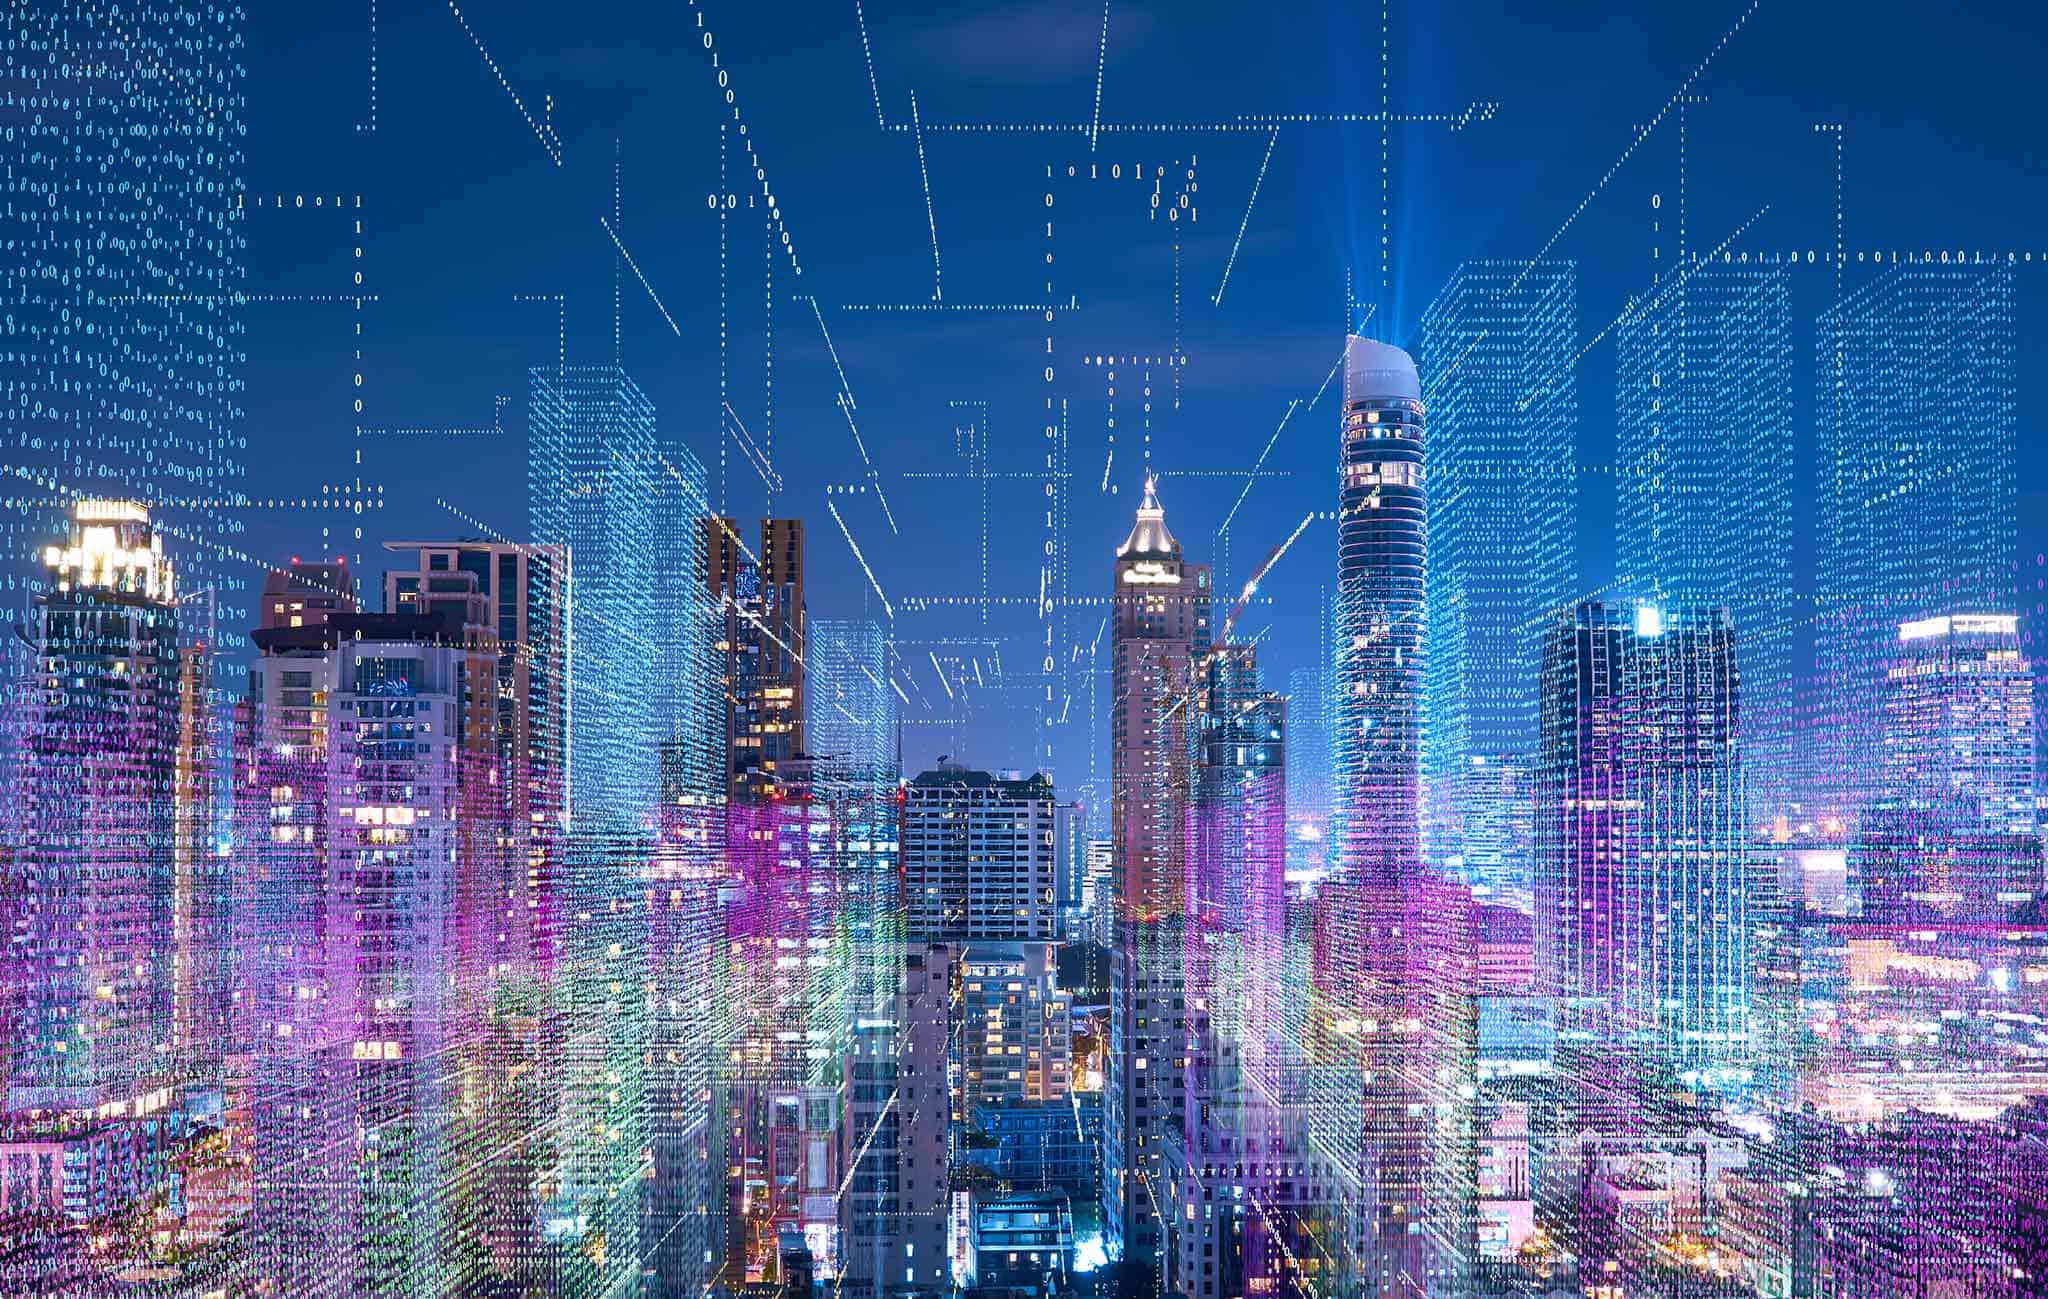 لماذا يتطلب إنشاء المدن الذكية معالجة البيانات في الوقت الحقيقي؟